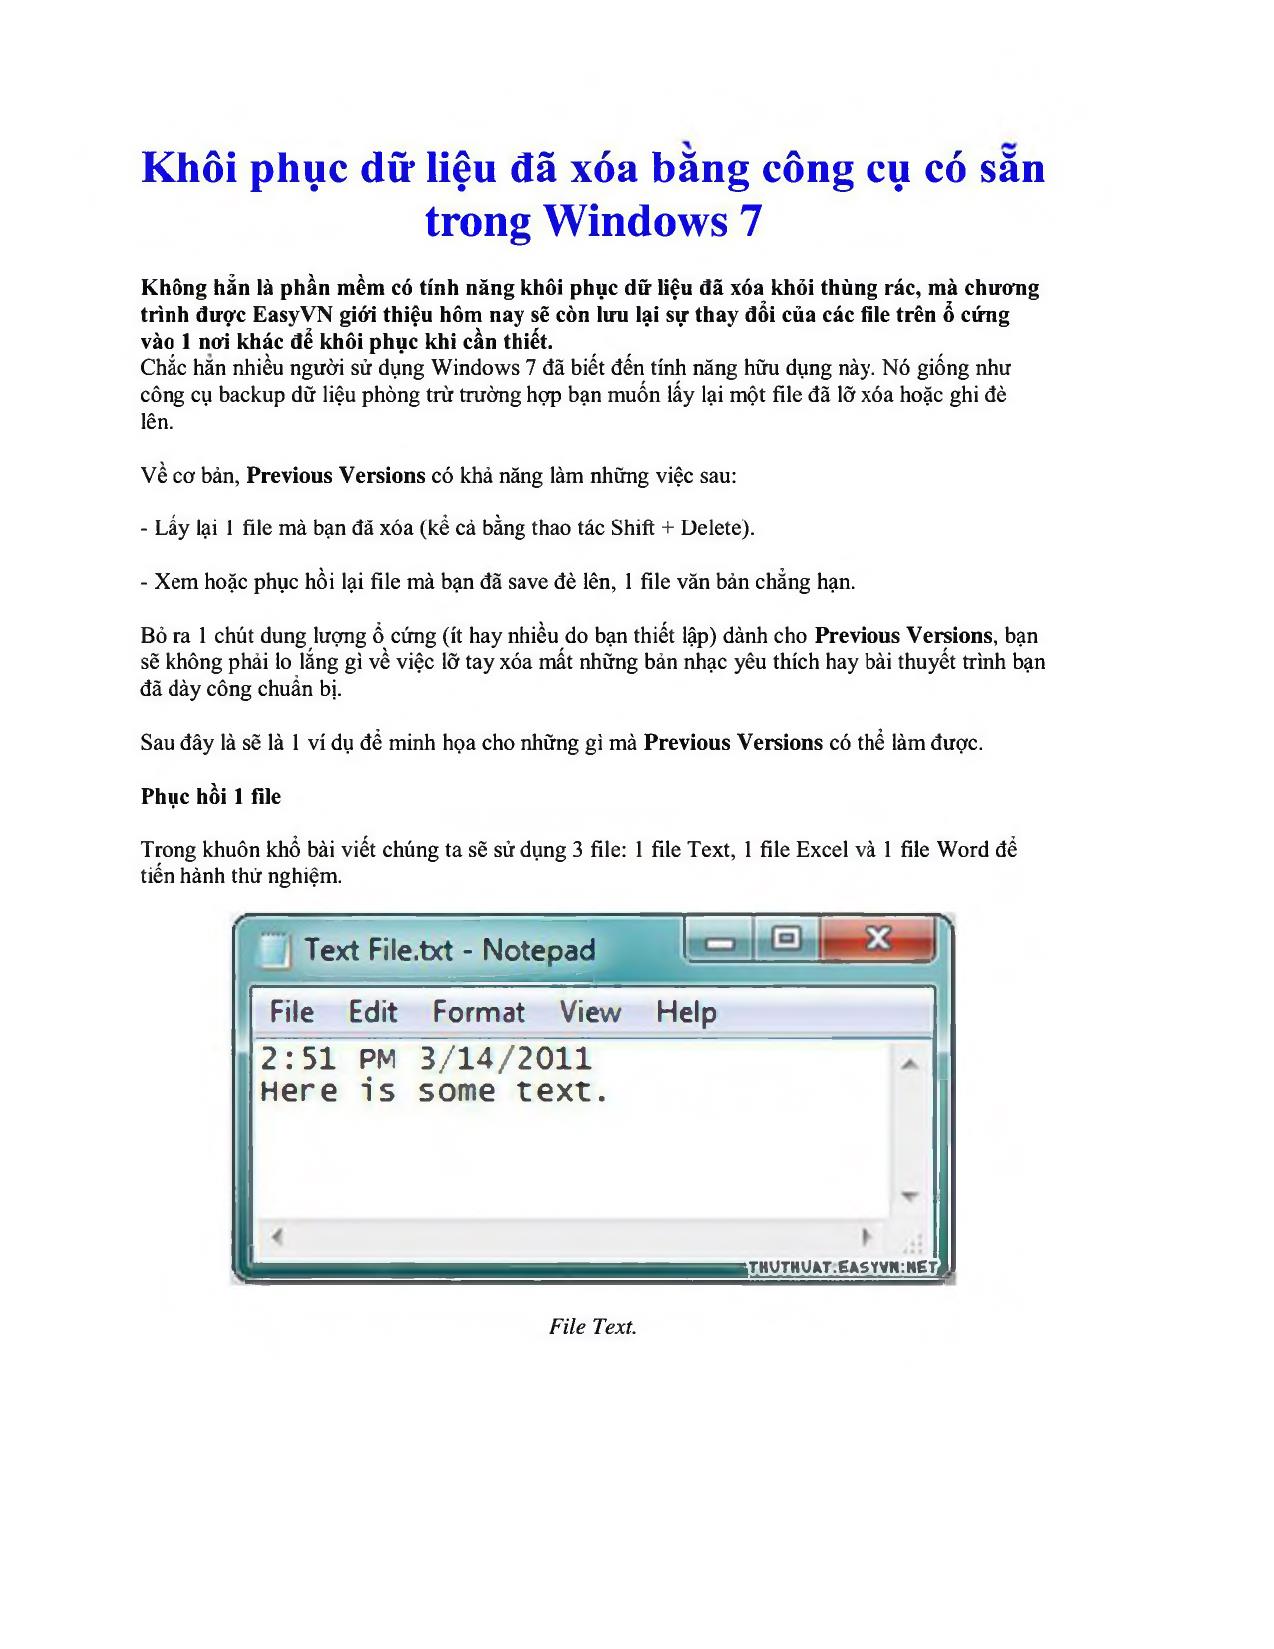 Khôi phục dữ liệu đã xóa băng công cụ có săn trong Windows 7 trang 1